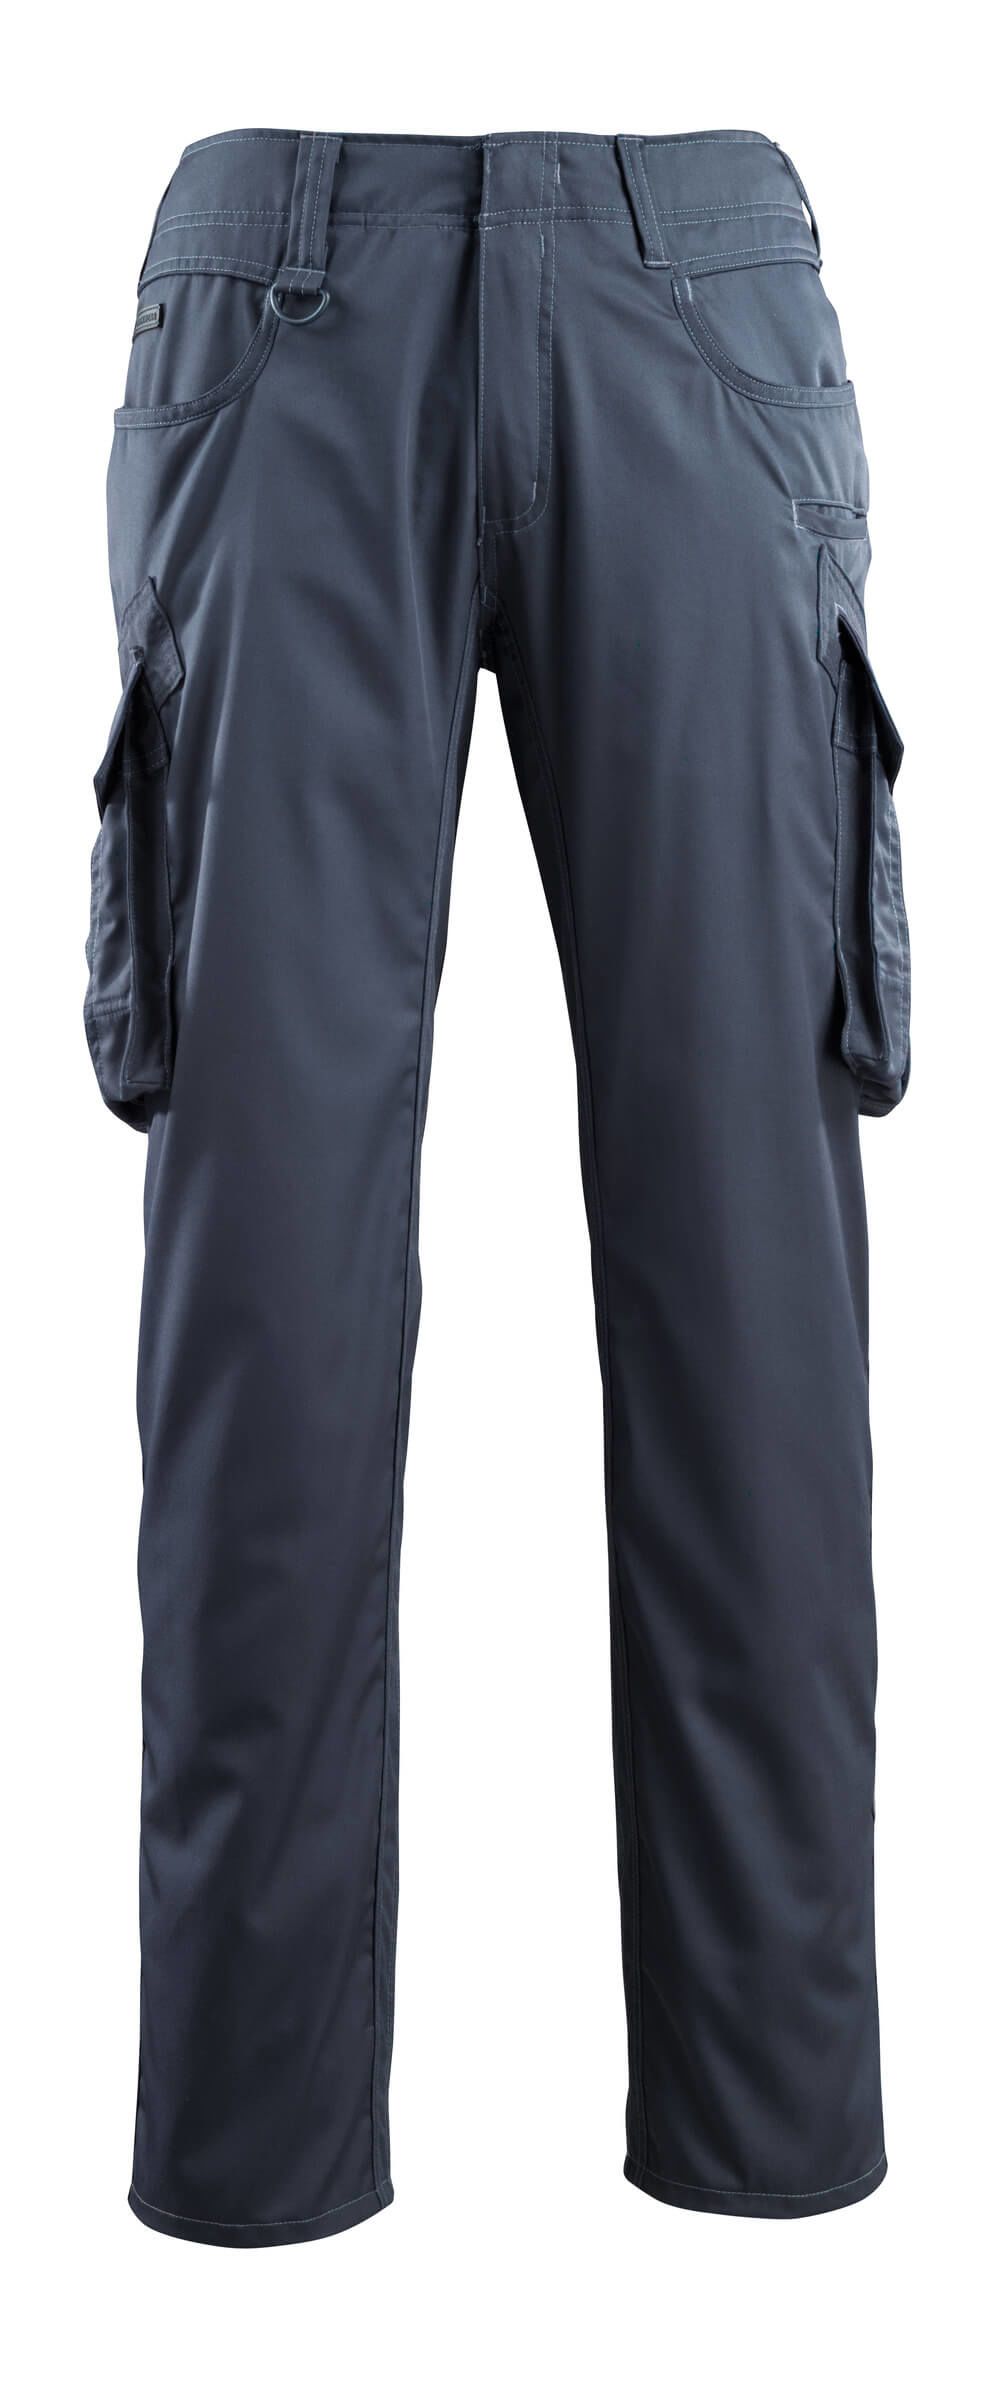 Mascot Workwear INGOLSTADT Dark Navy Unisex's Cotton, Polyester Trousers 41in, 50 Waist